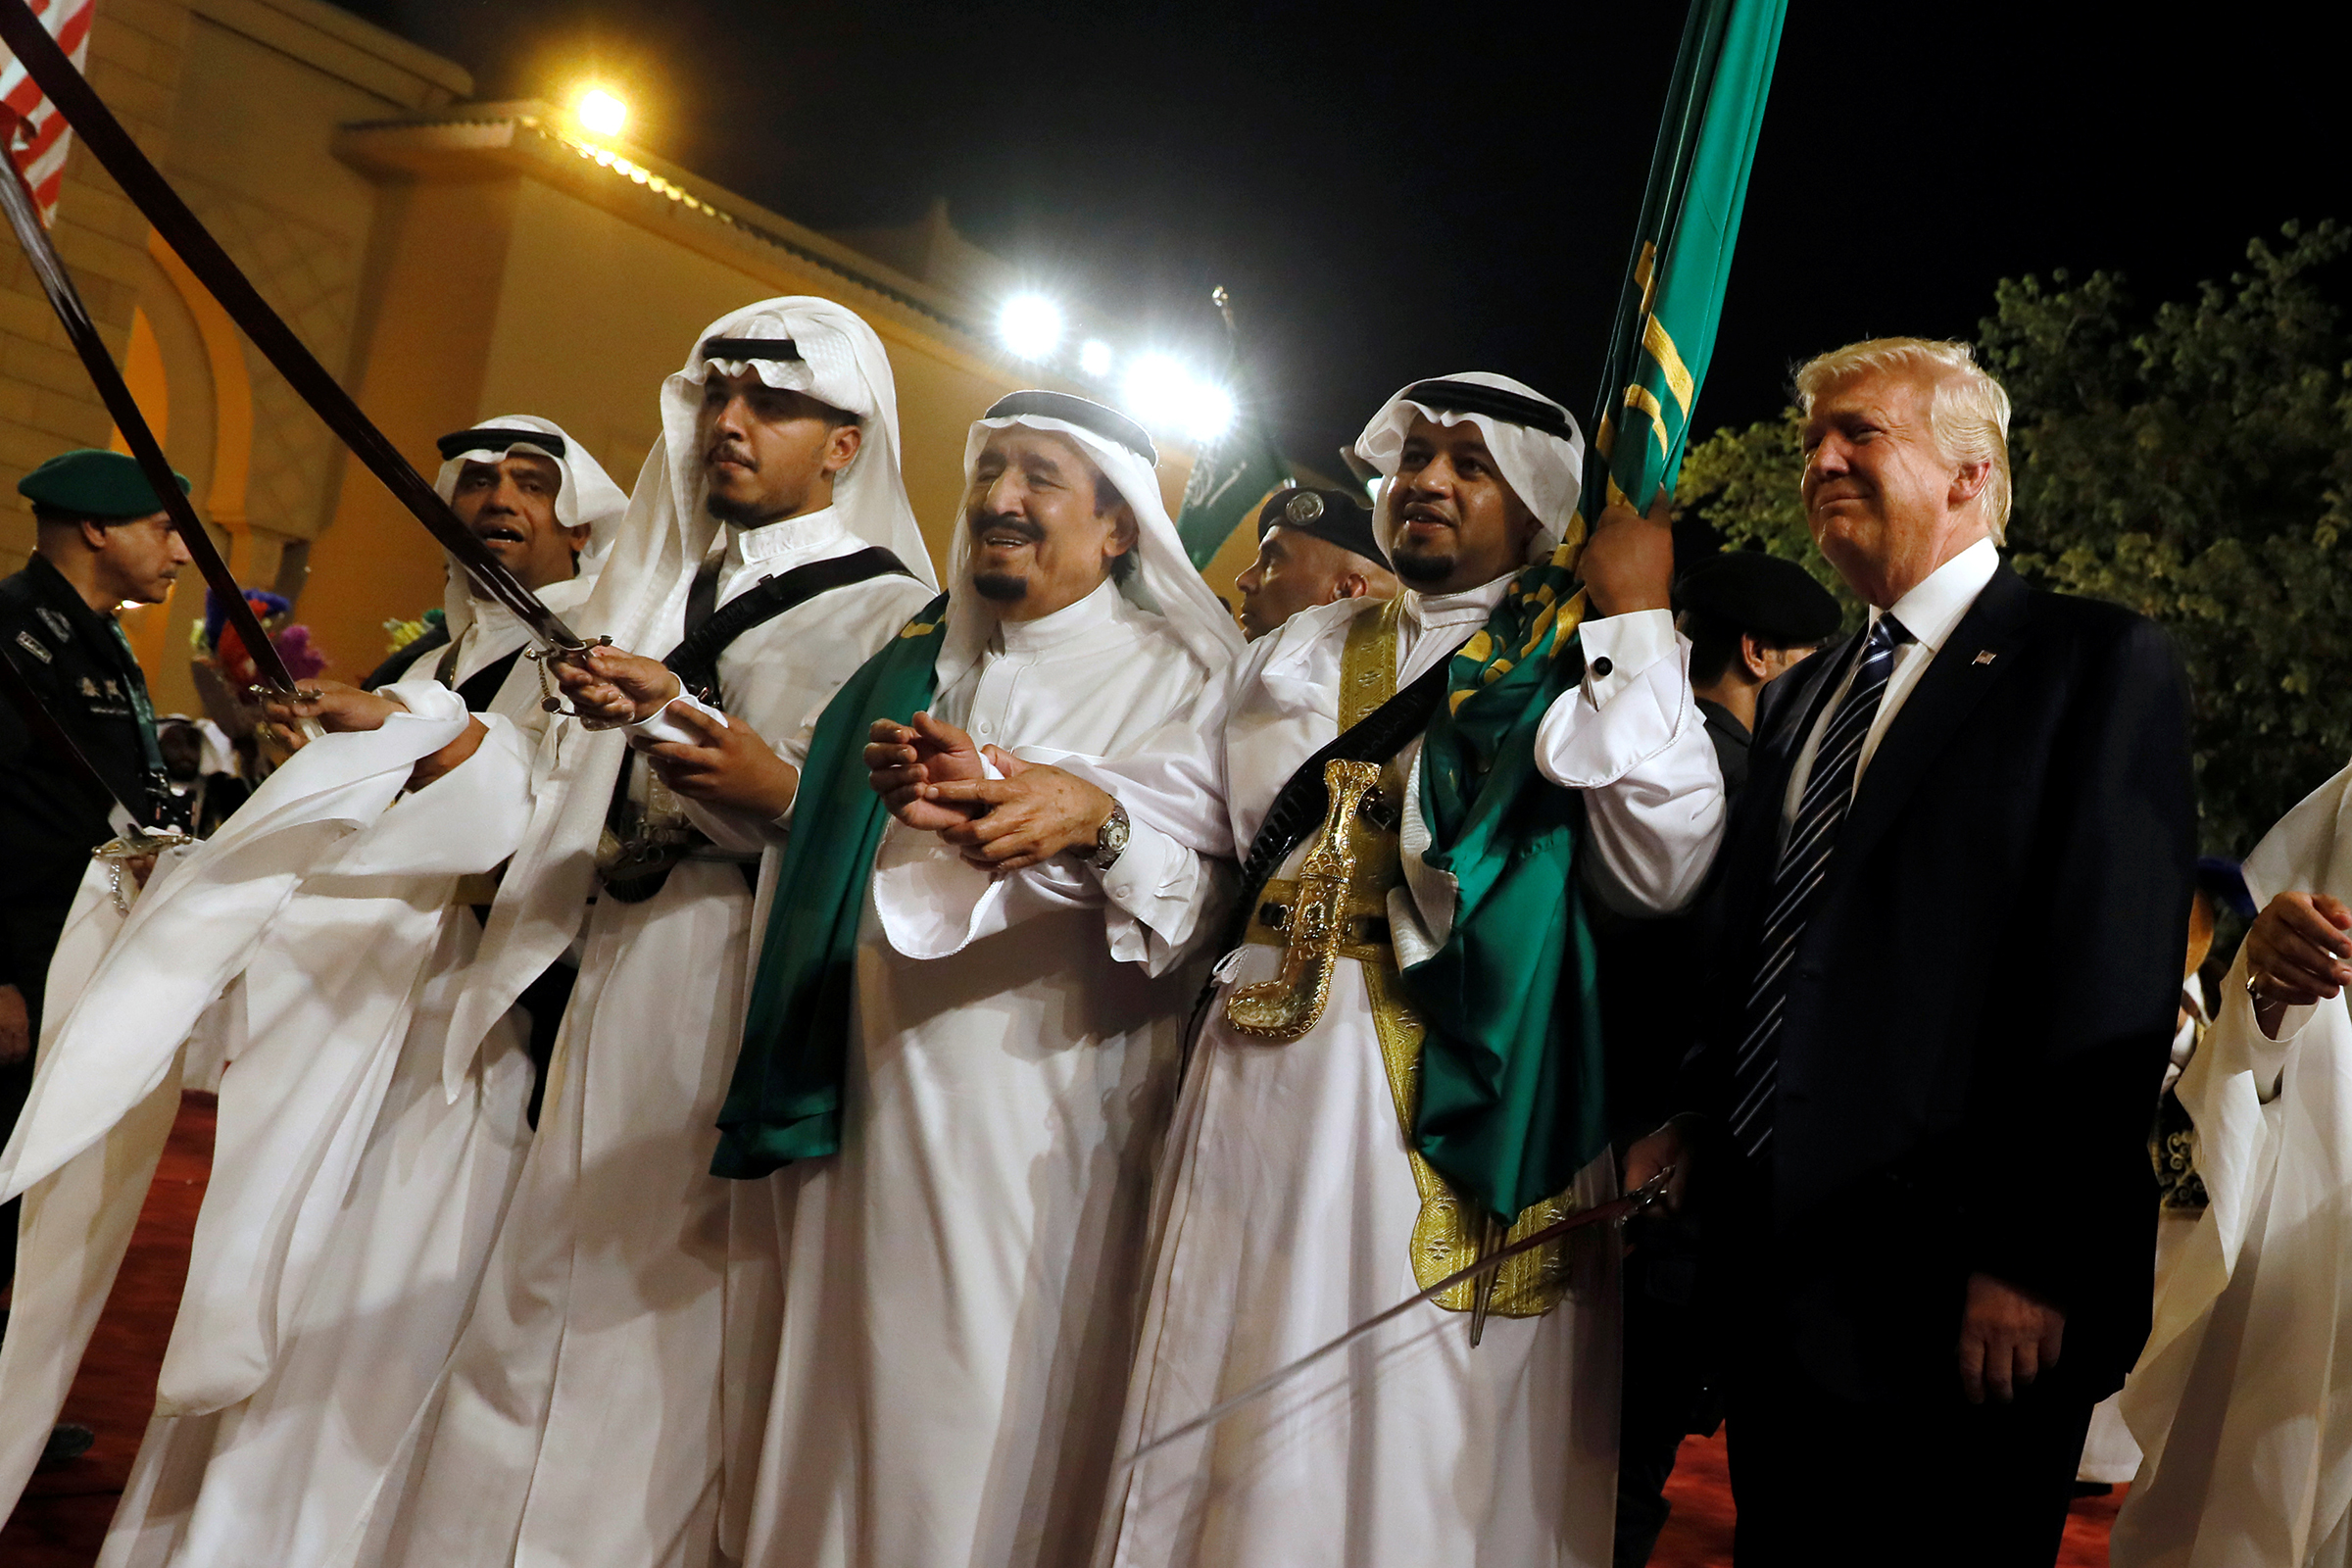 20 мая 2017 года. Танец с мечами аль-арда (&laquo;Танец войны&raquo;) с участием президента США и короля Саудовской Аравии. Эр-Рияд, Саудовская Аравия
